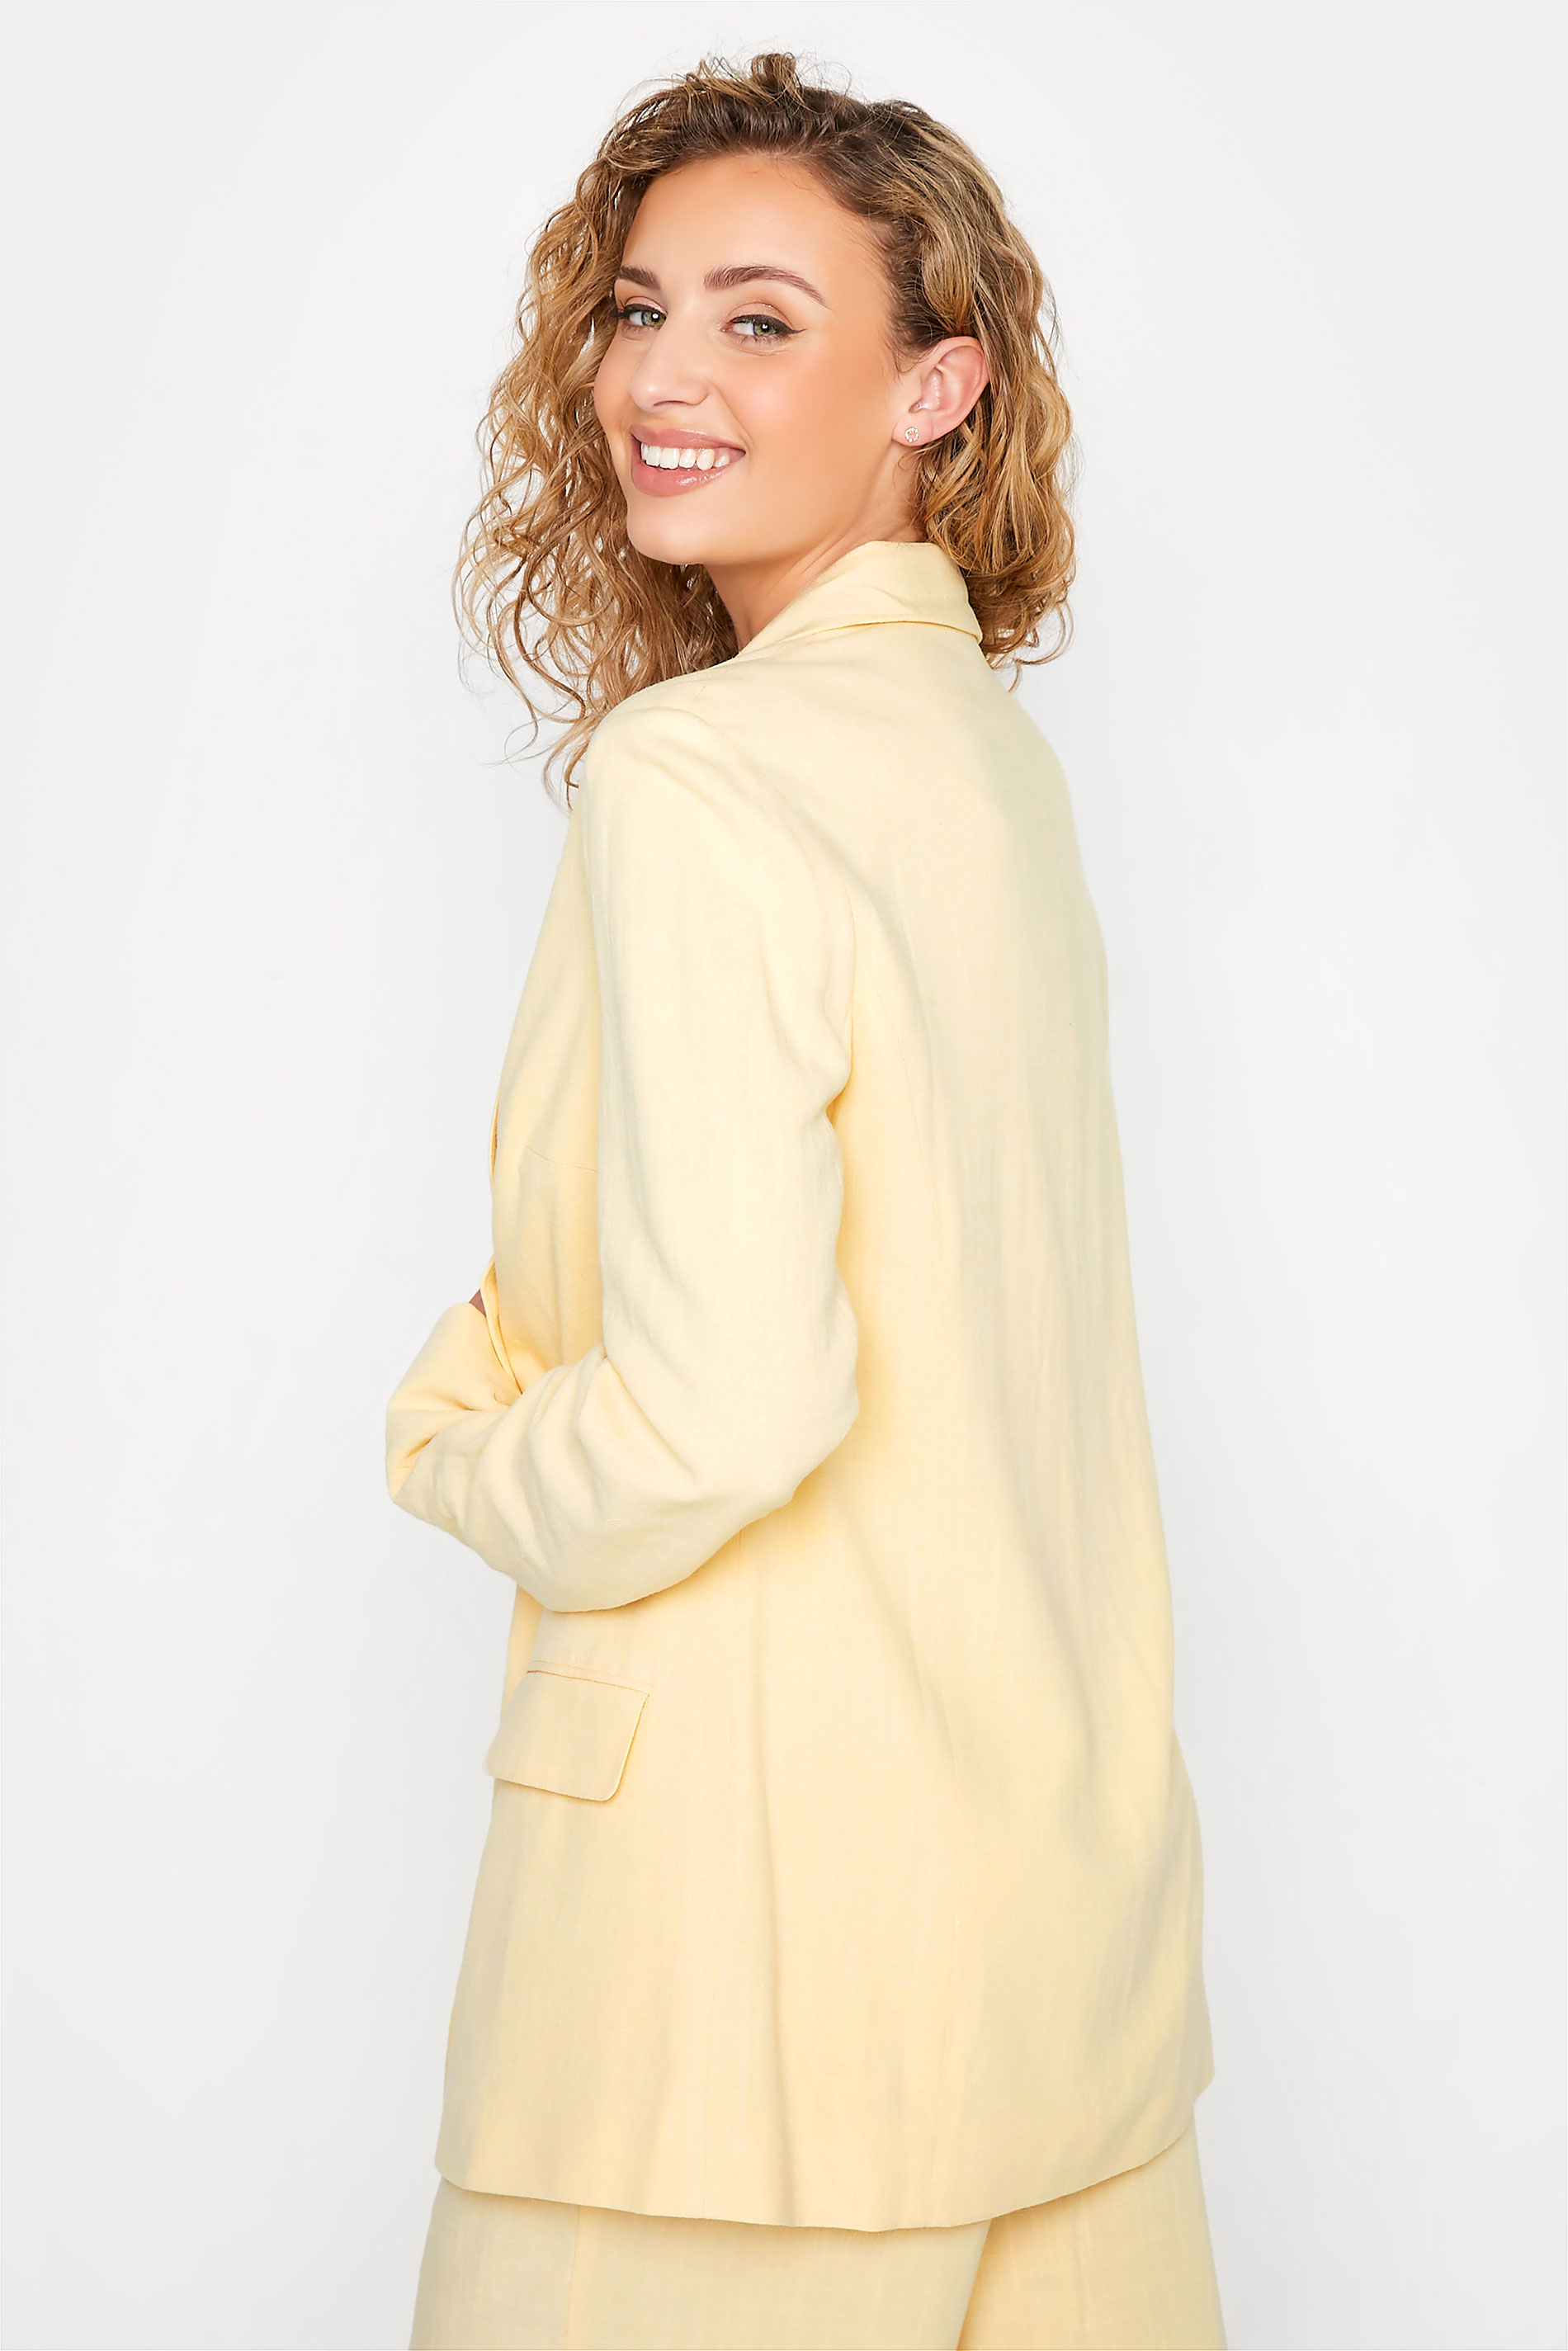 LTS Tall Women's Lemon Yellow Linen Look Blazer | Long Tall Sally  3